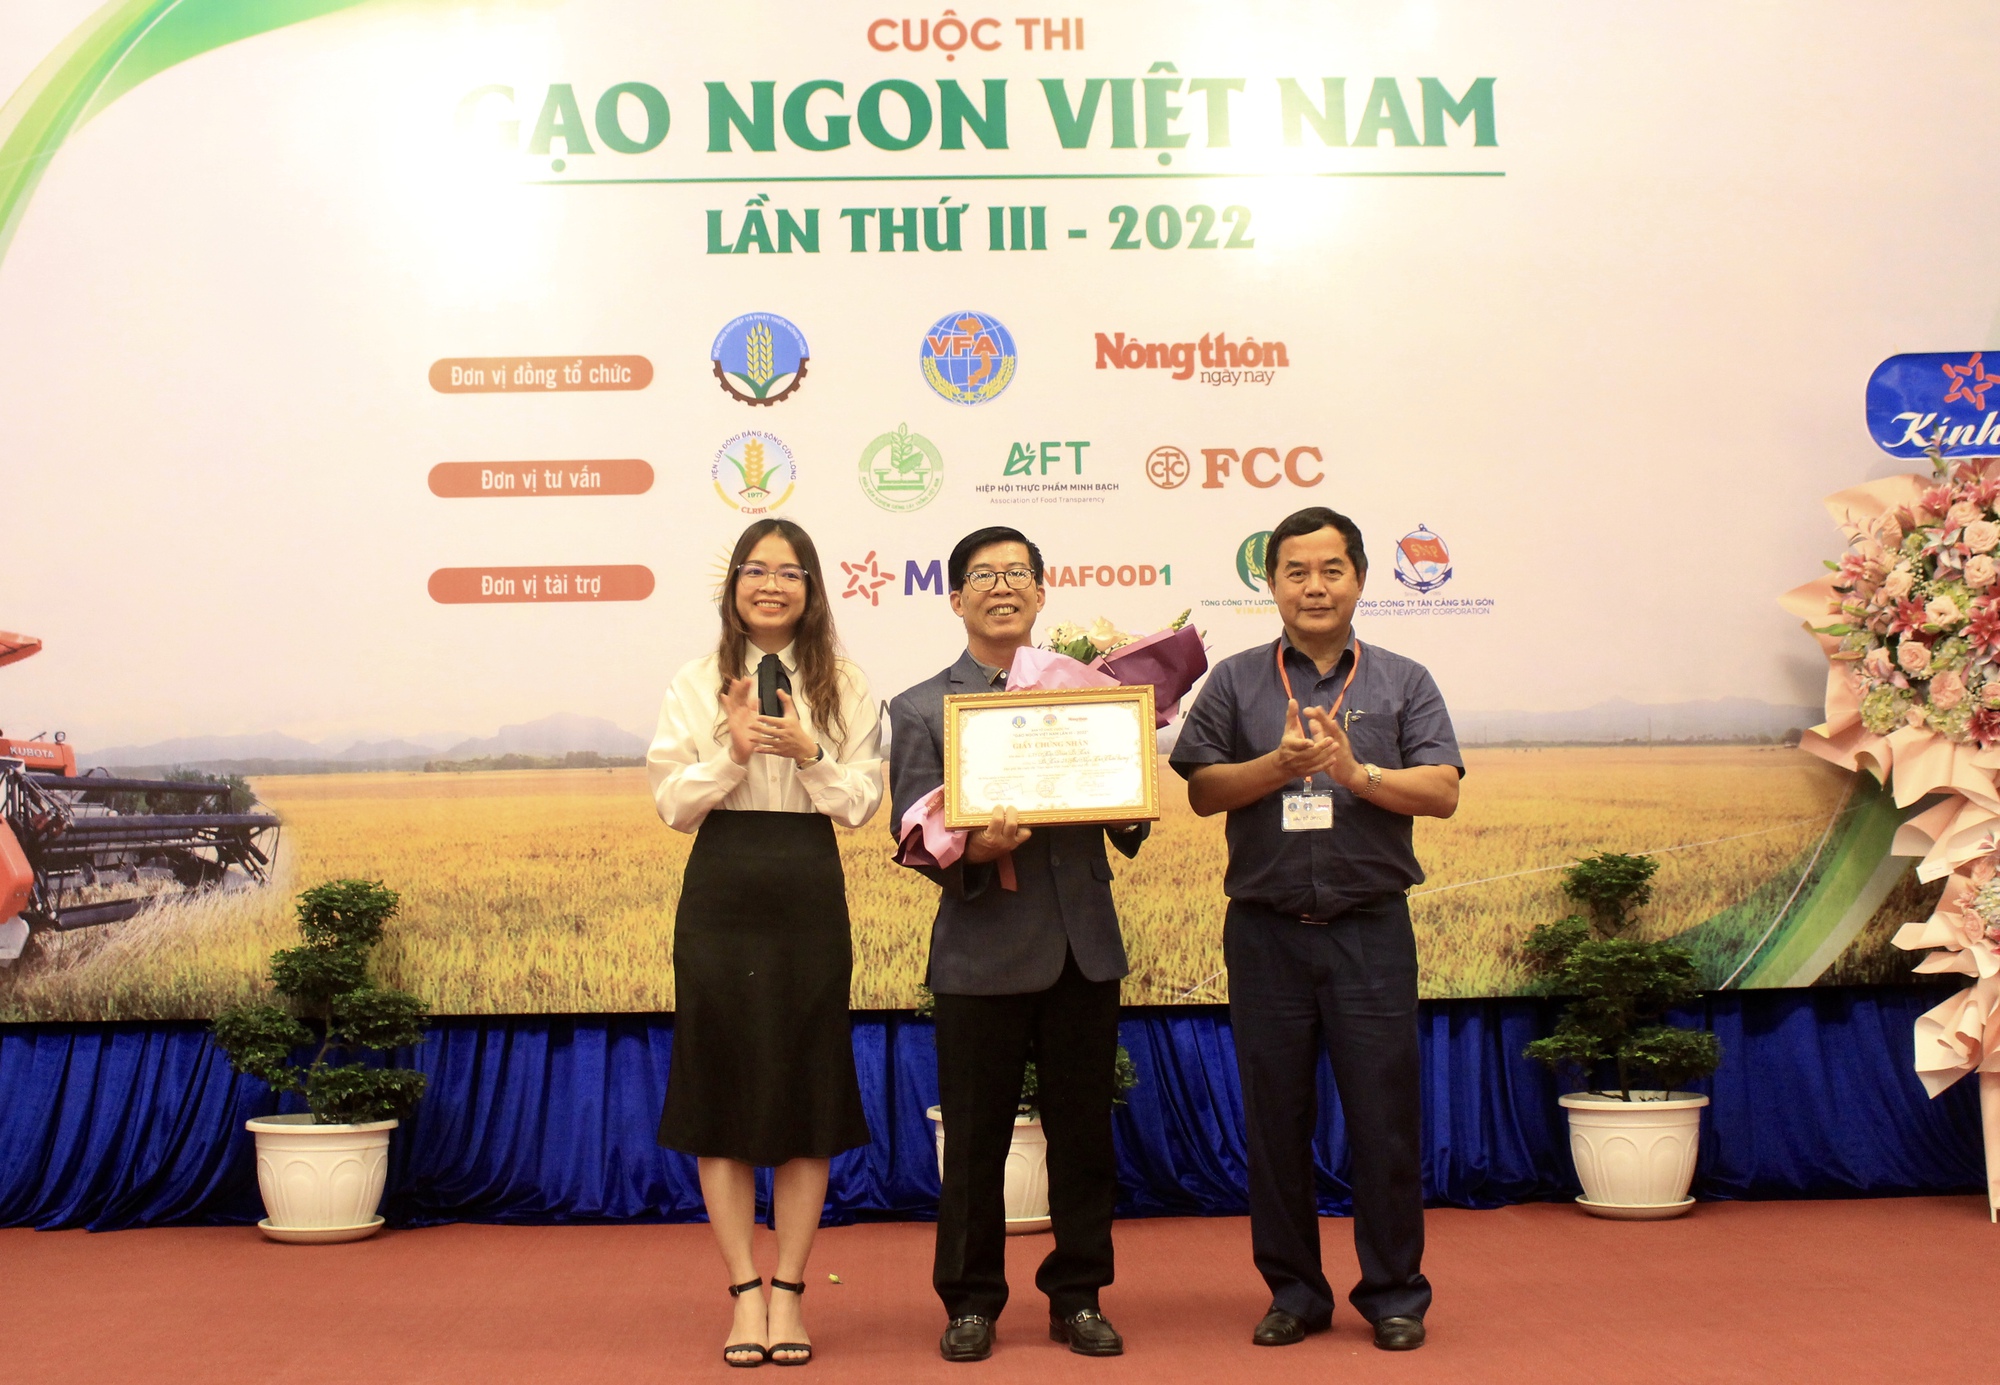 Gạo TBR39 giành giải Nhất cuộc thi Gạo ngon Việt Nam 2022 - Ảnh 3.